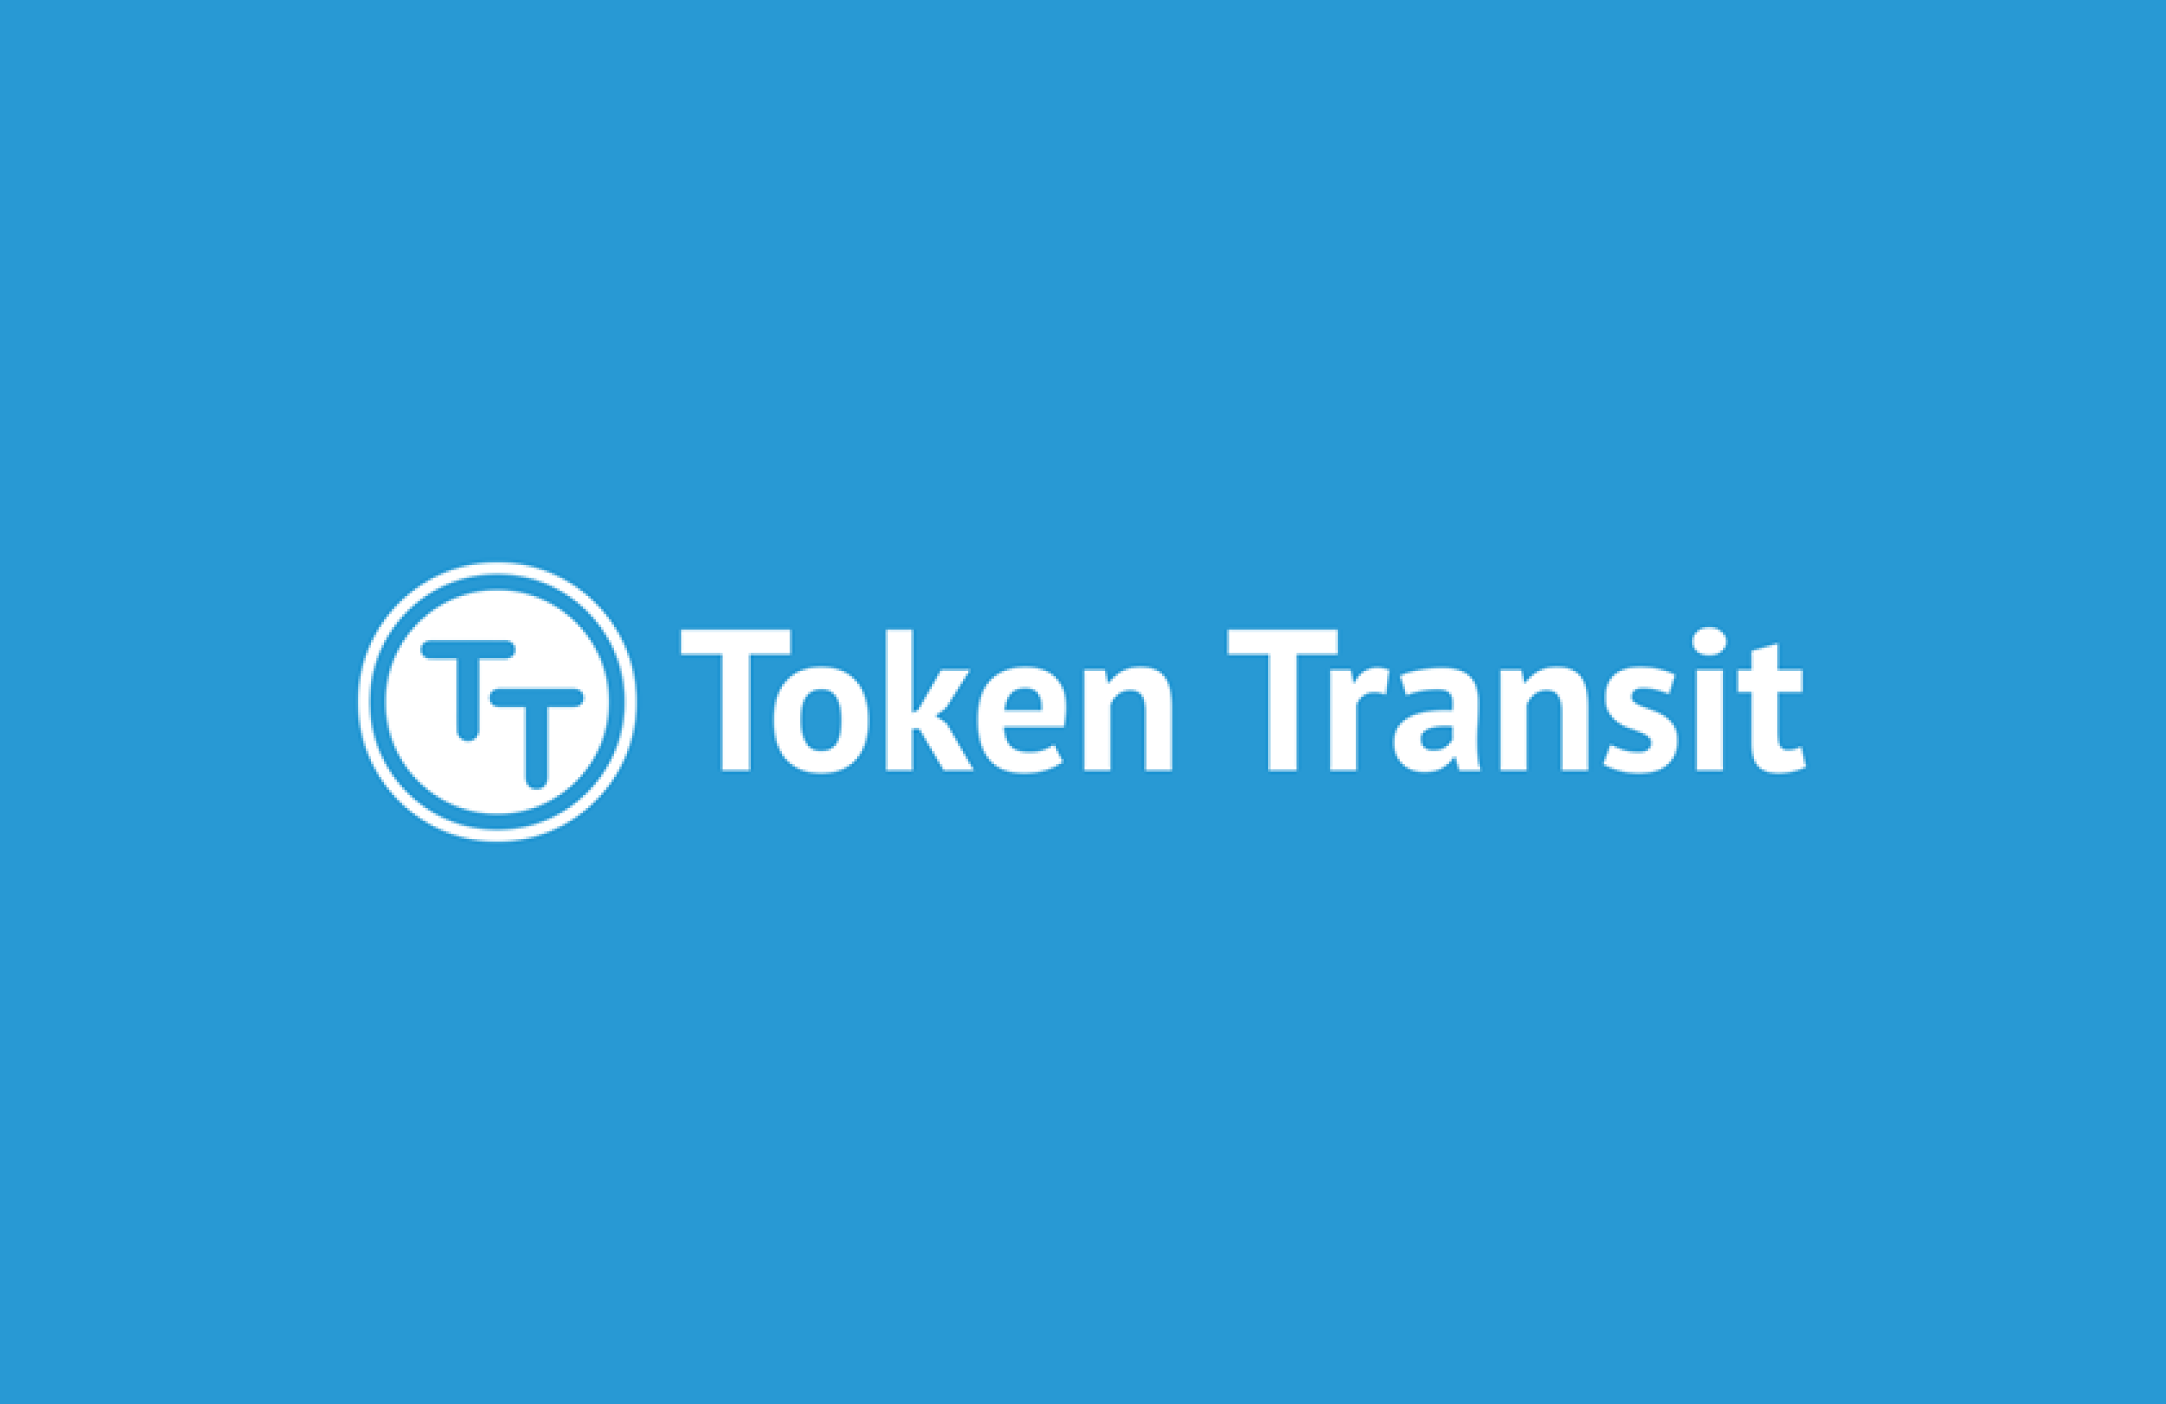 token transit logo